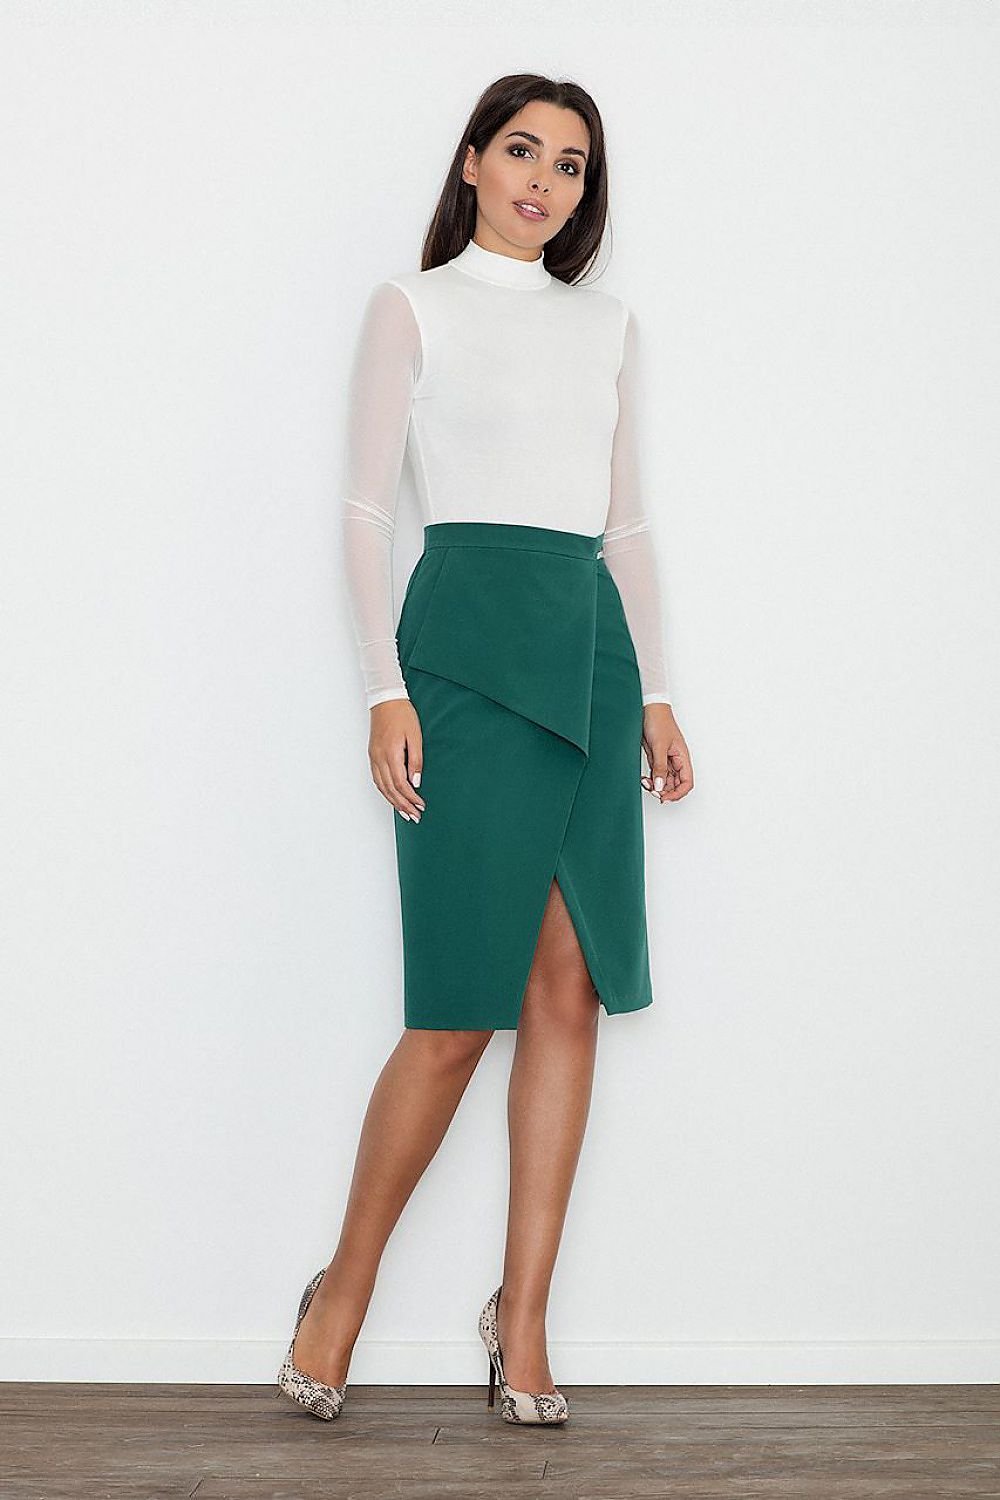 Jupe portefeuille verte tendance mi-longue asymétrique pour un look chic et moderne, idéale pour une tenue de bureau ou une sortie.